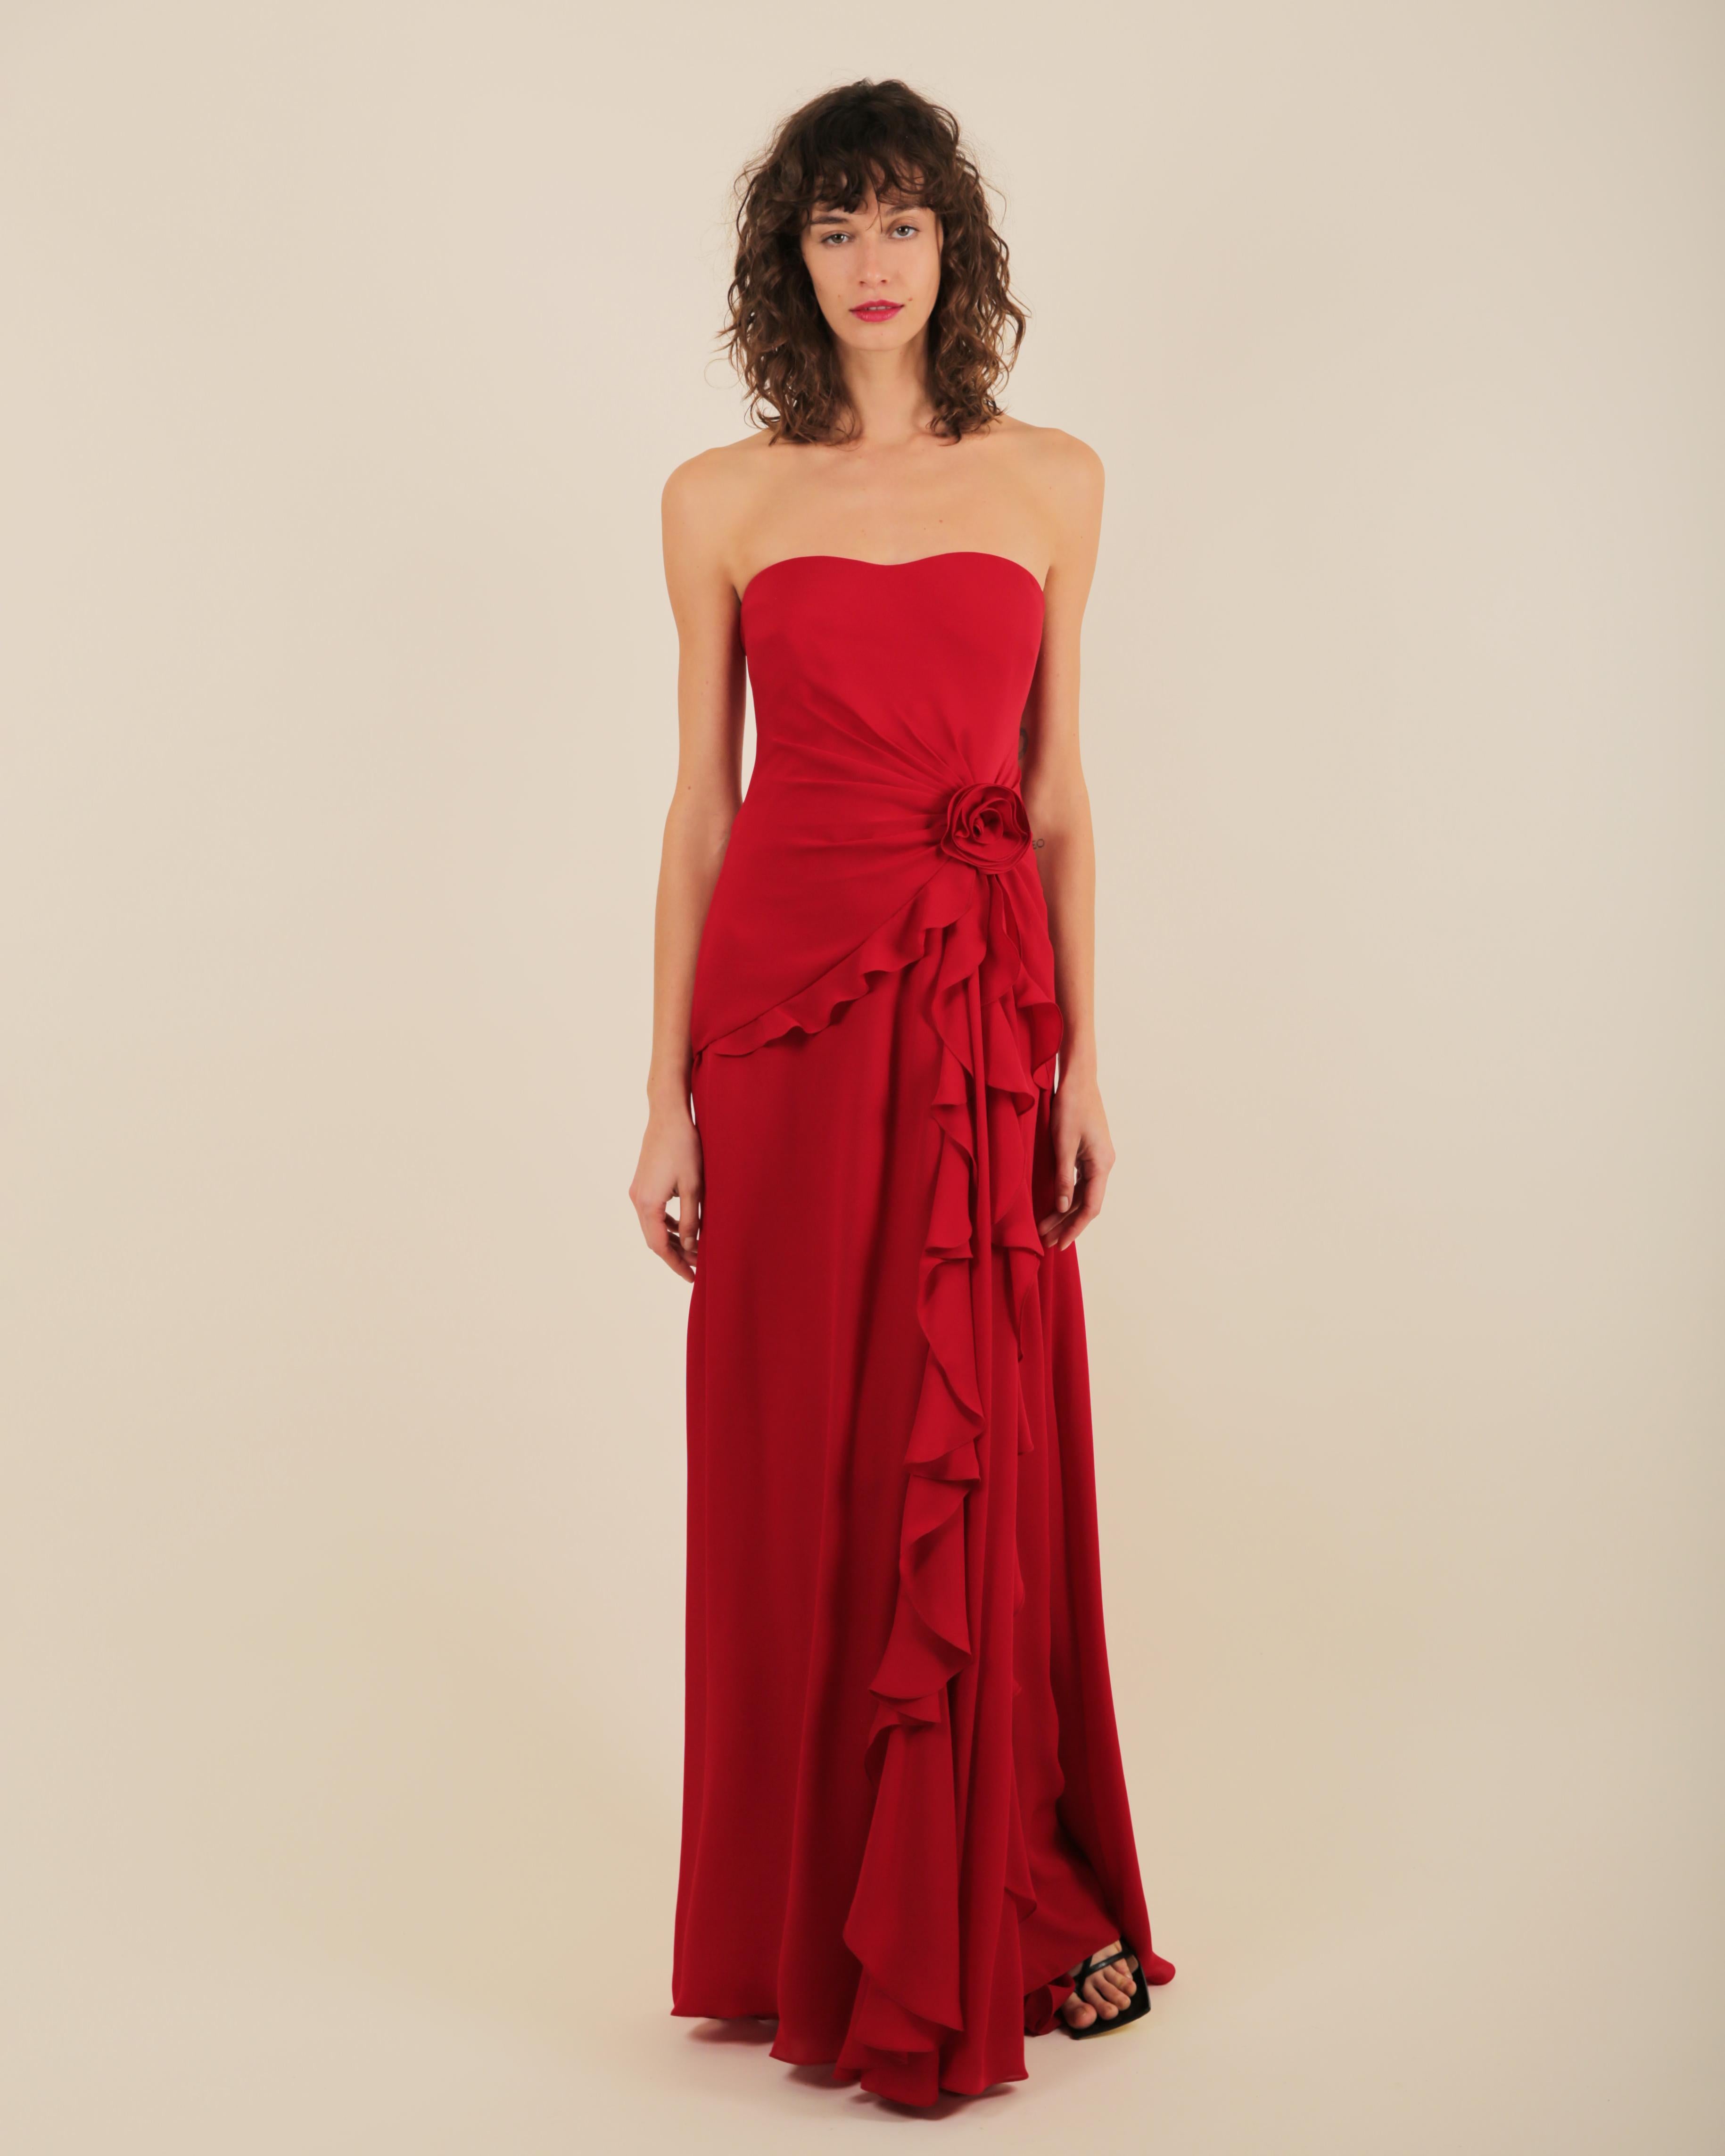 Ralph Lauren SS 2013 strapless bustier red sweetheart neck train silk gown dress 6